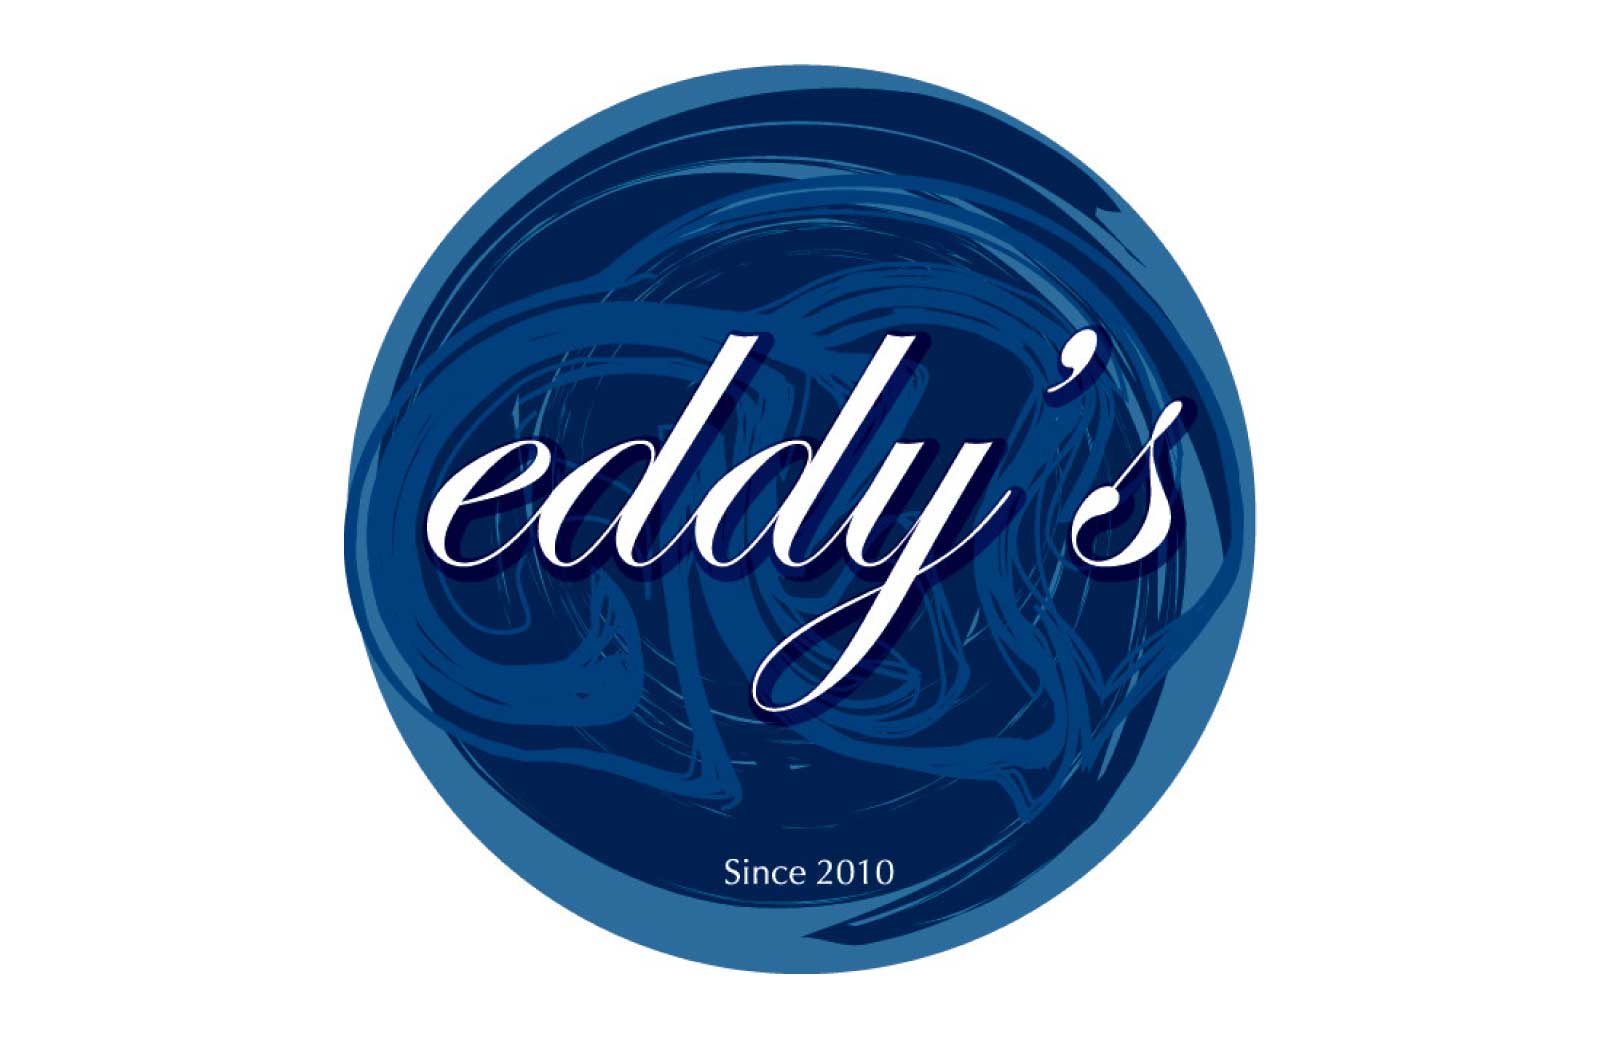 eddy's